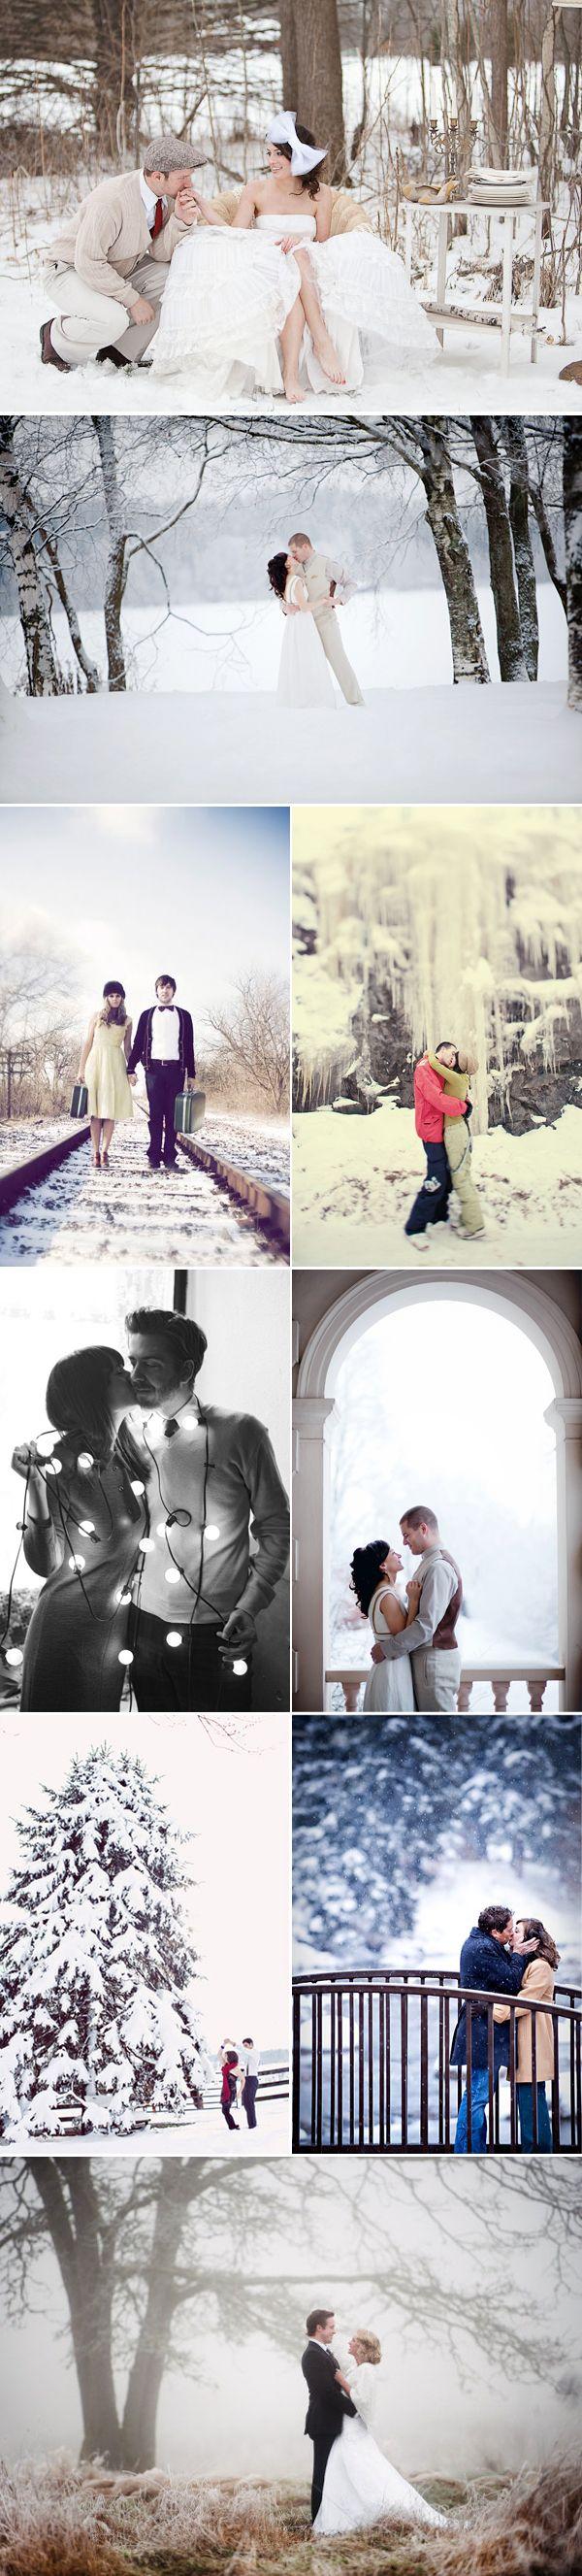 Свадьба - Зима Участия Фотографий 